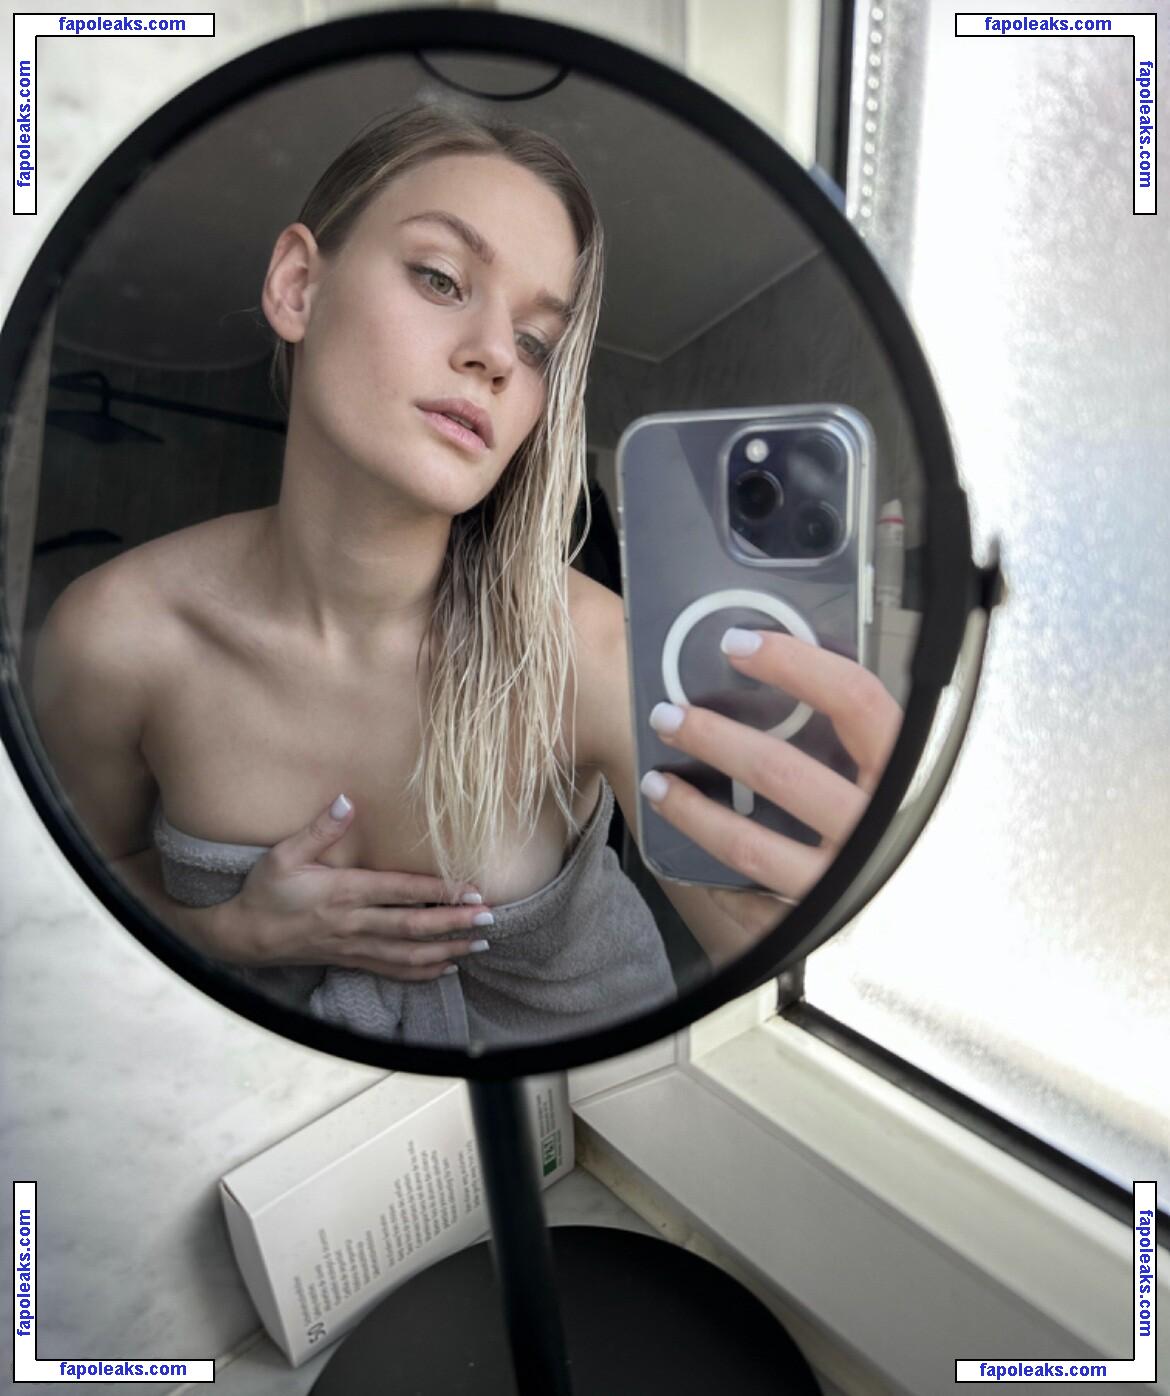 Kathrinmay / Angelina Mayer / angeliina_mayer / thecutestuffedanimal nude photo #0045 from OnlyFans